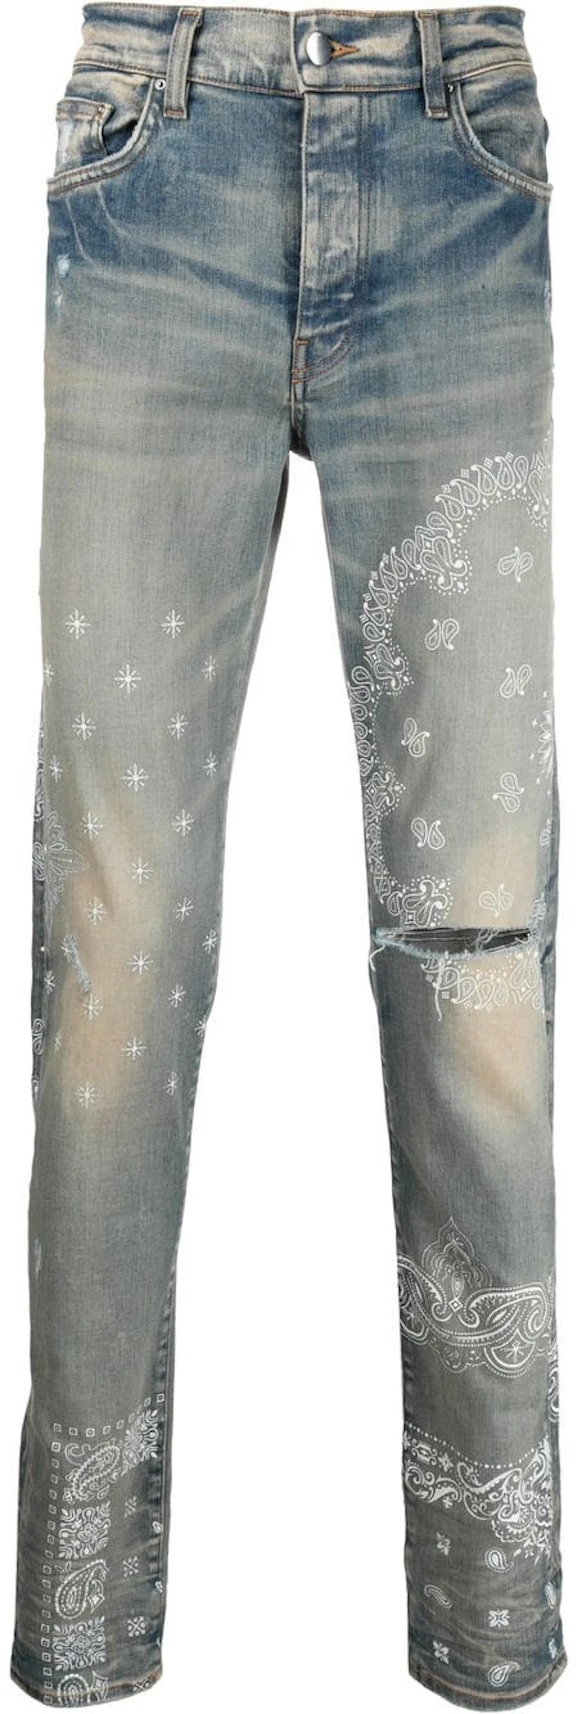 AMIRI Bandana Print Skinny Jeans Clay Indigo - SS21 - US